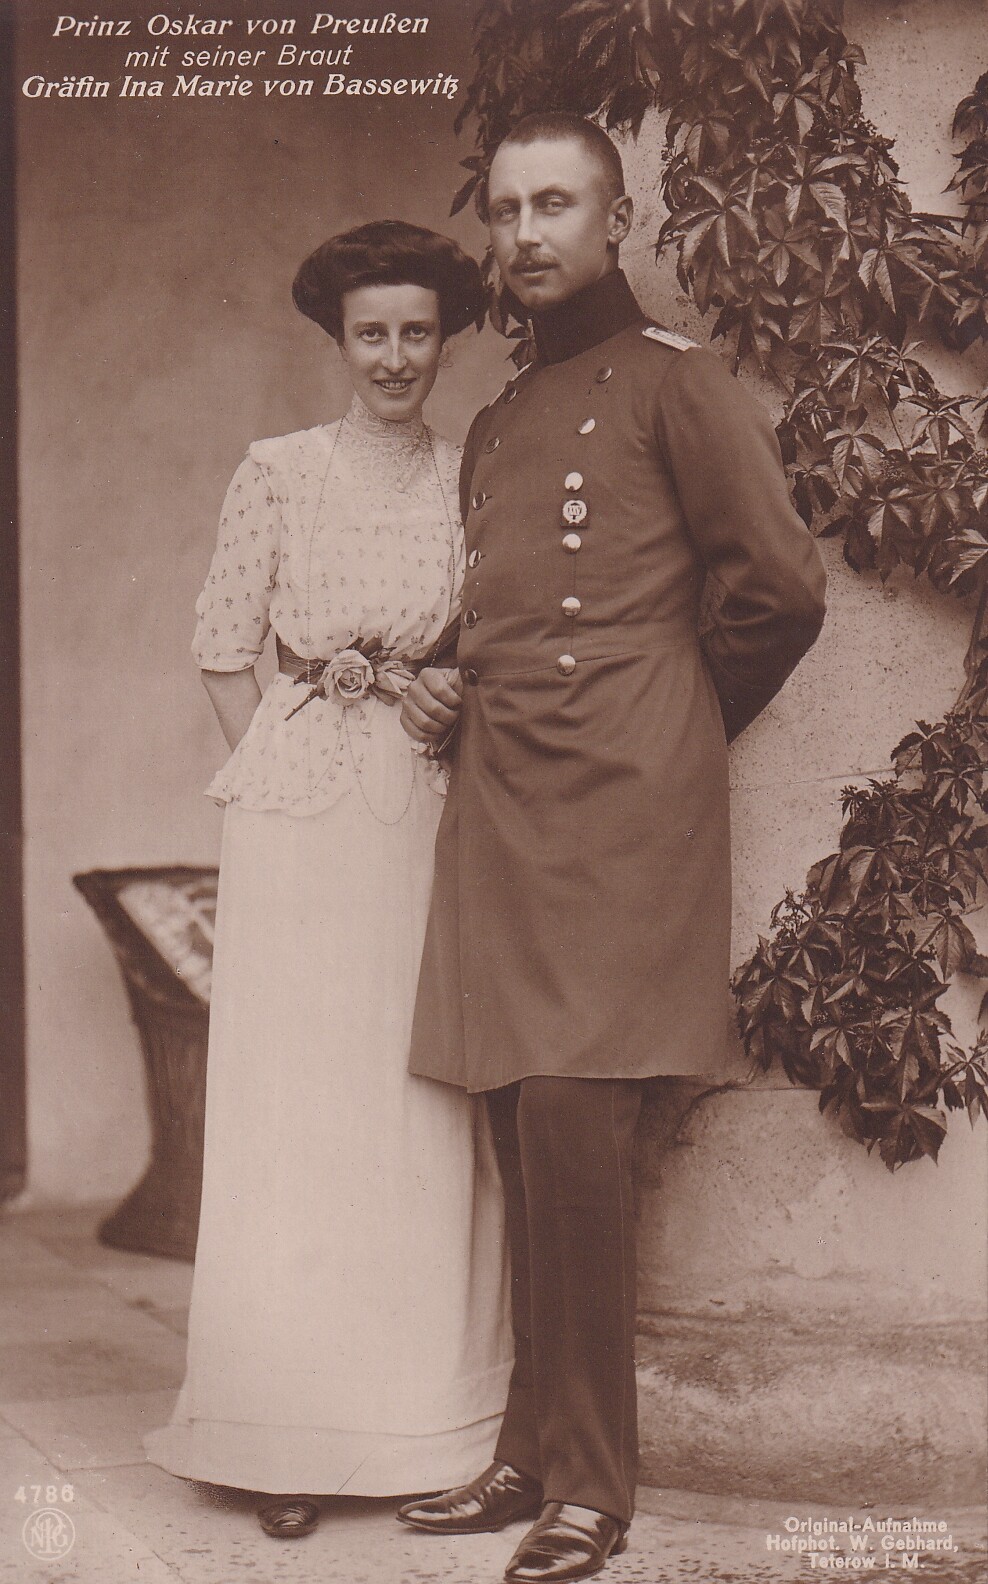 Bildpostkarte mit Foto von Prinz Oskar von Preußen und seiner Braut Ina Marie, 1914 (Schloß Wernigerode GmbH RR-F)